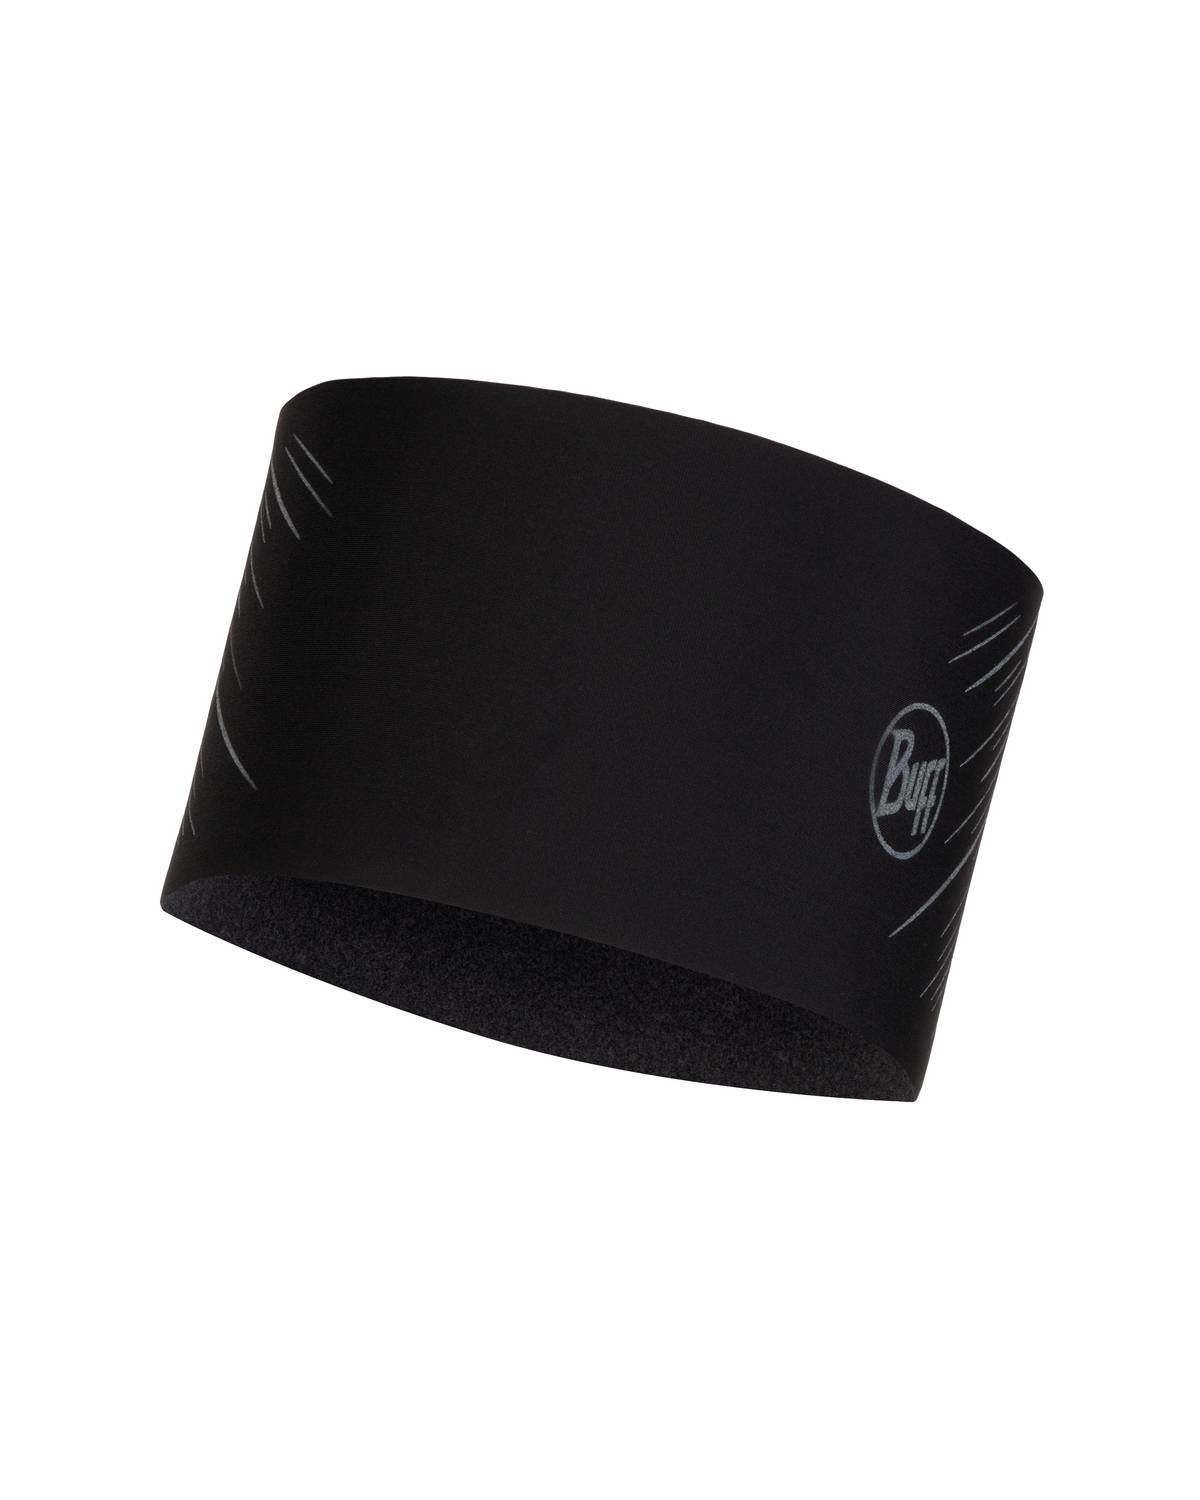 Повязка Buff Merino Fleece Headband Black, US:one size, 29451.999.10.00 купить на ЖДБЗ.ру